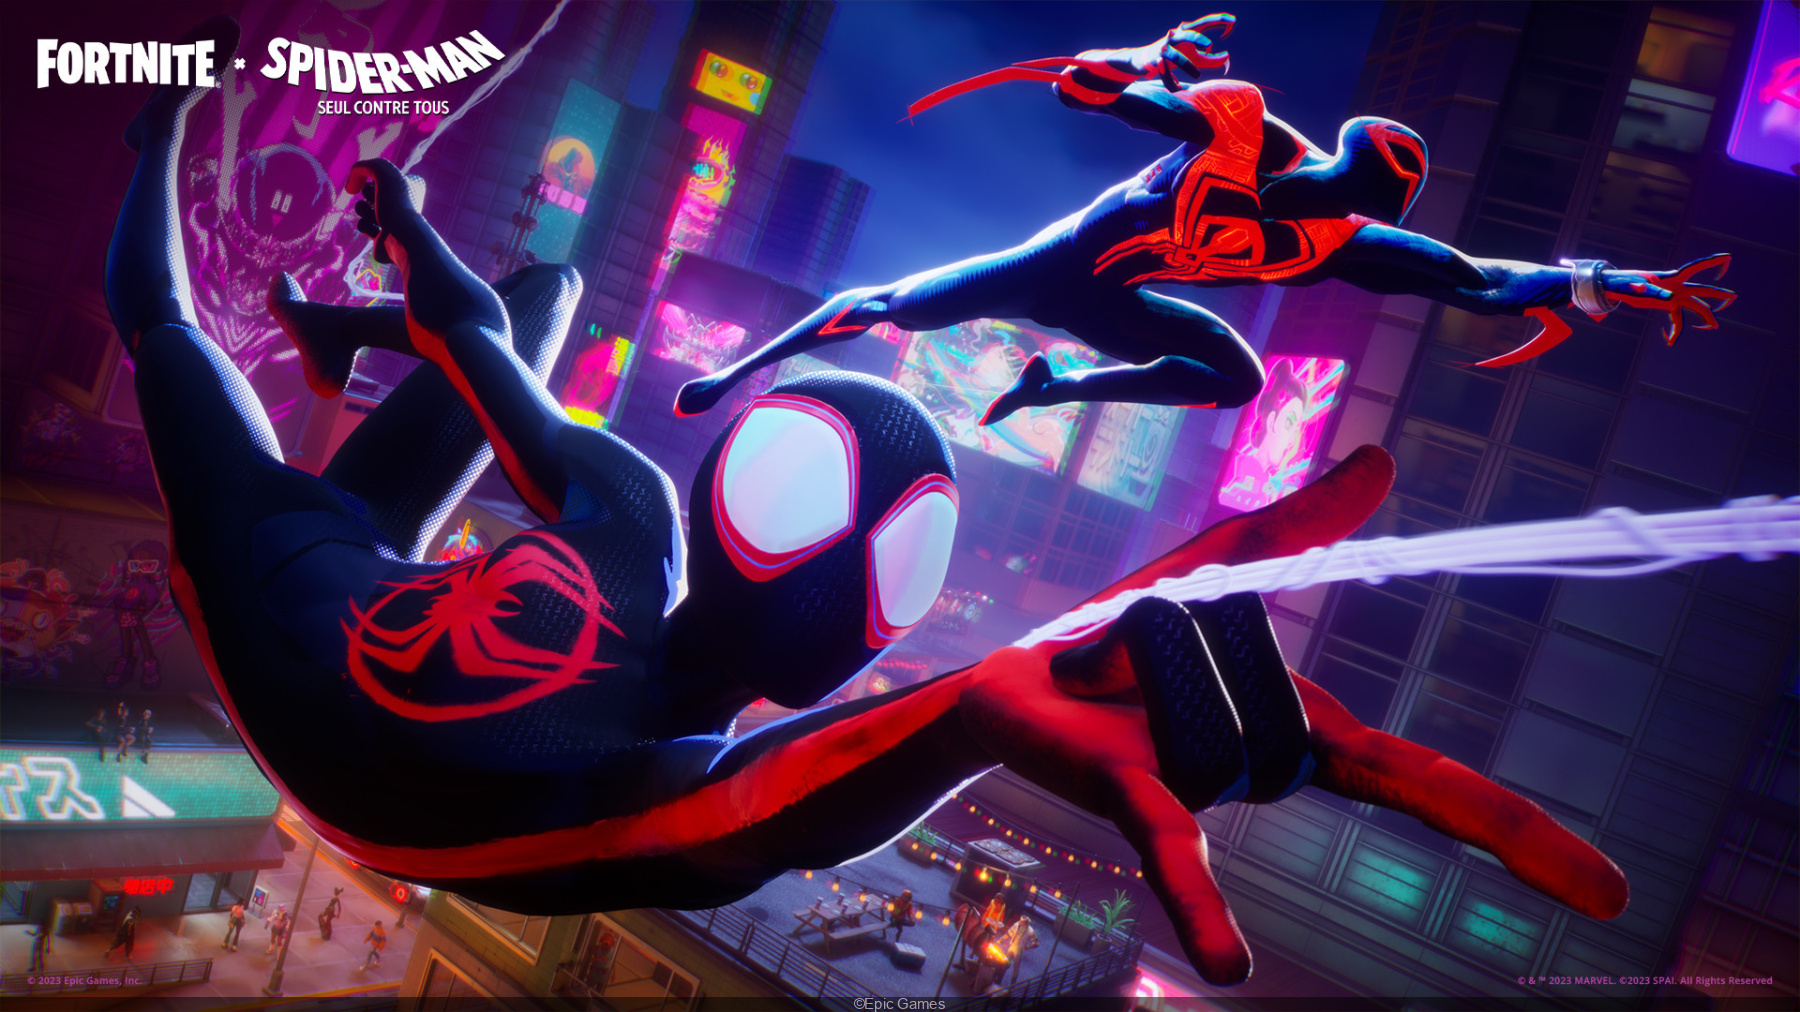 Marvel's Spider-Man tem forte lançamento no PC, mas não supera God of War 